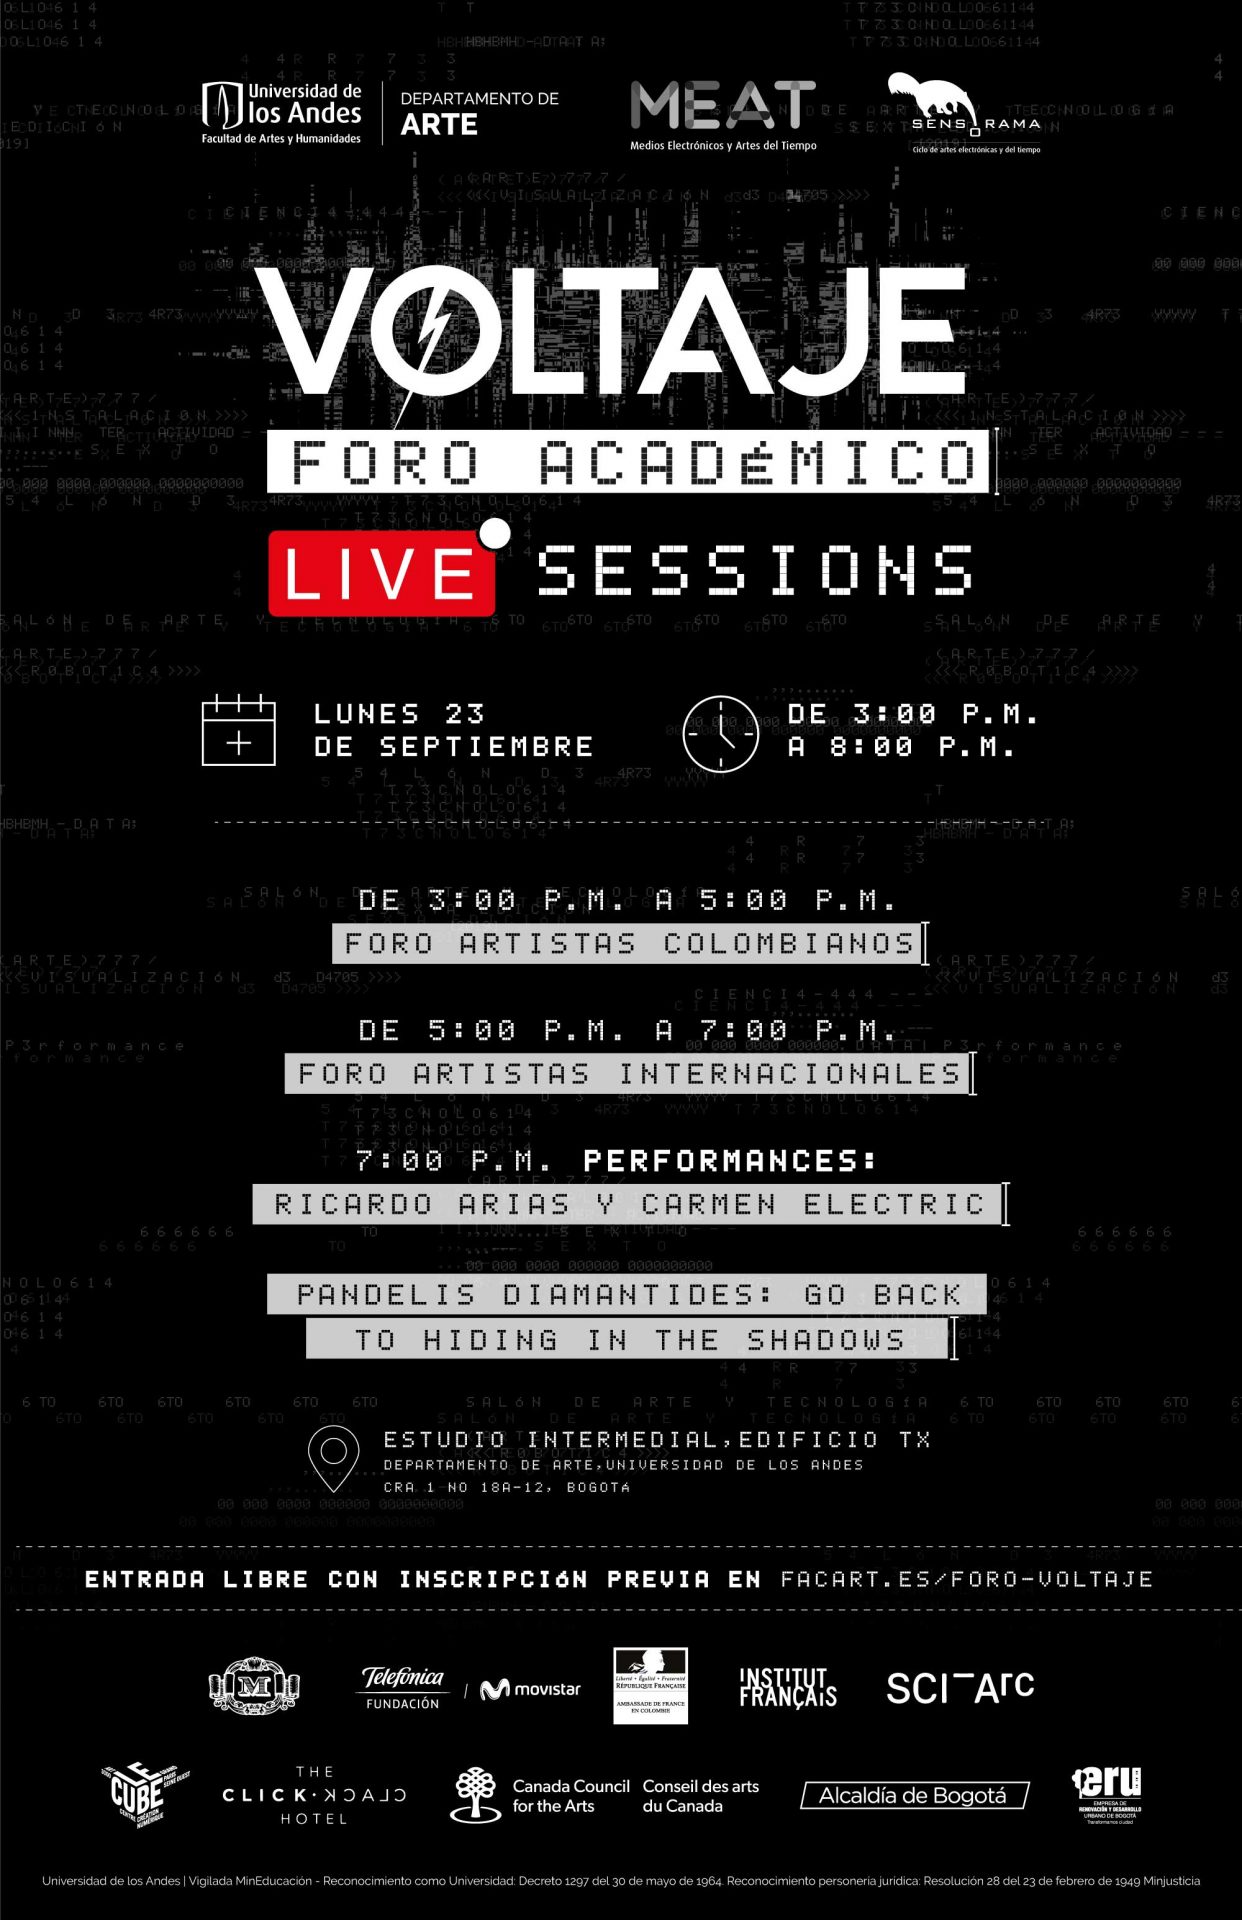 Foro académico & Live sessions - Voltaje 6ª Edición